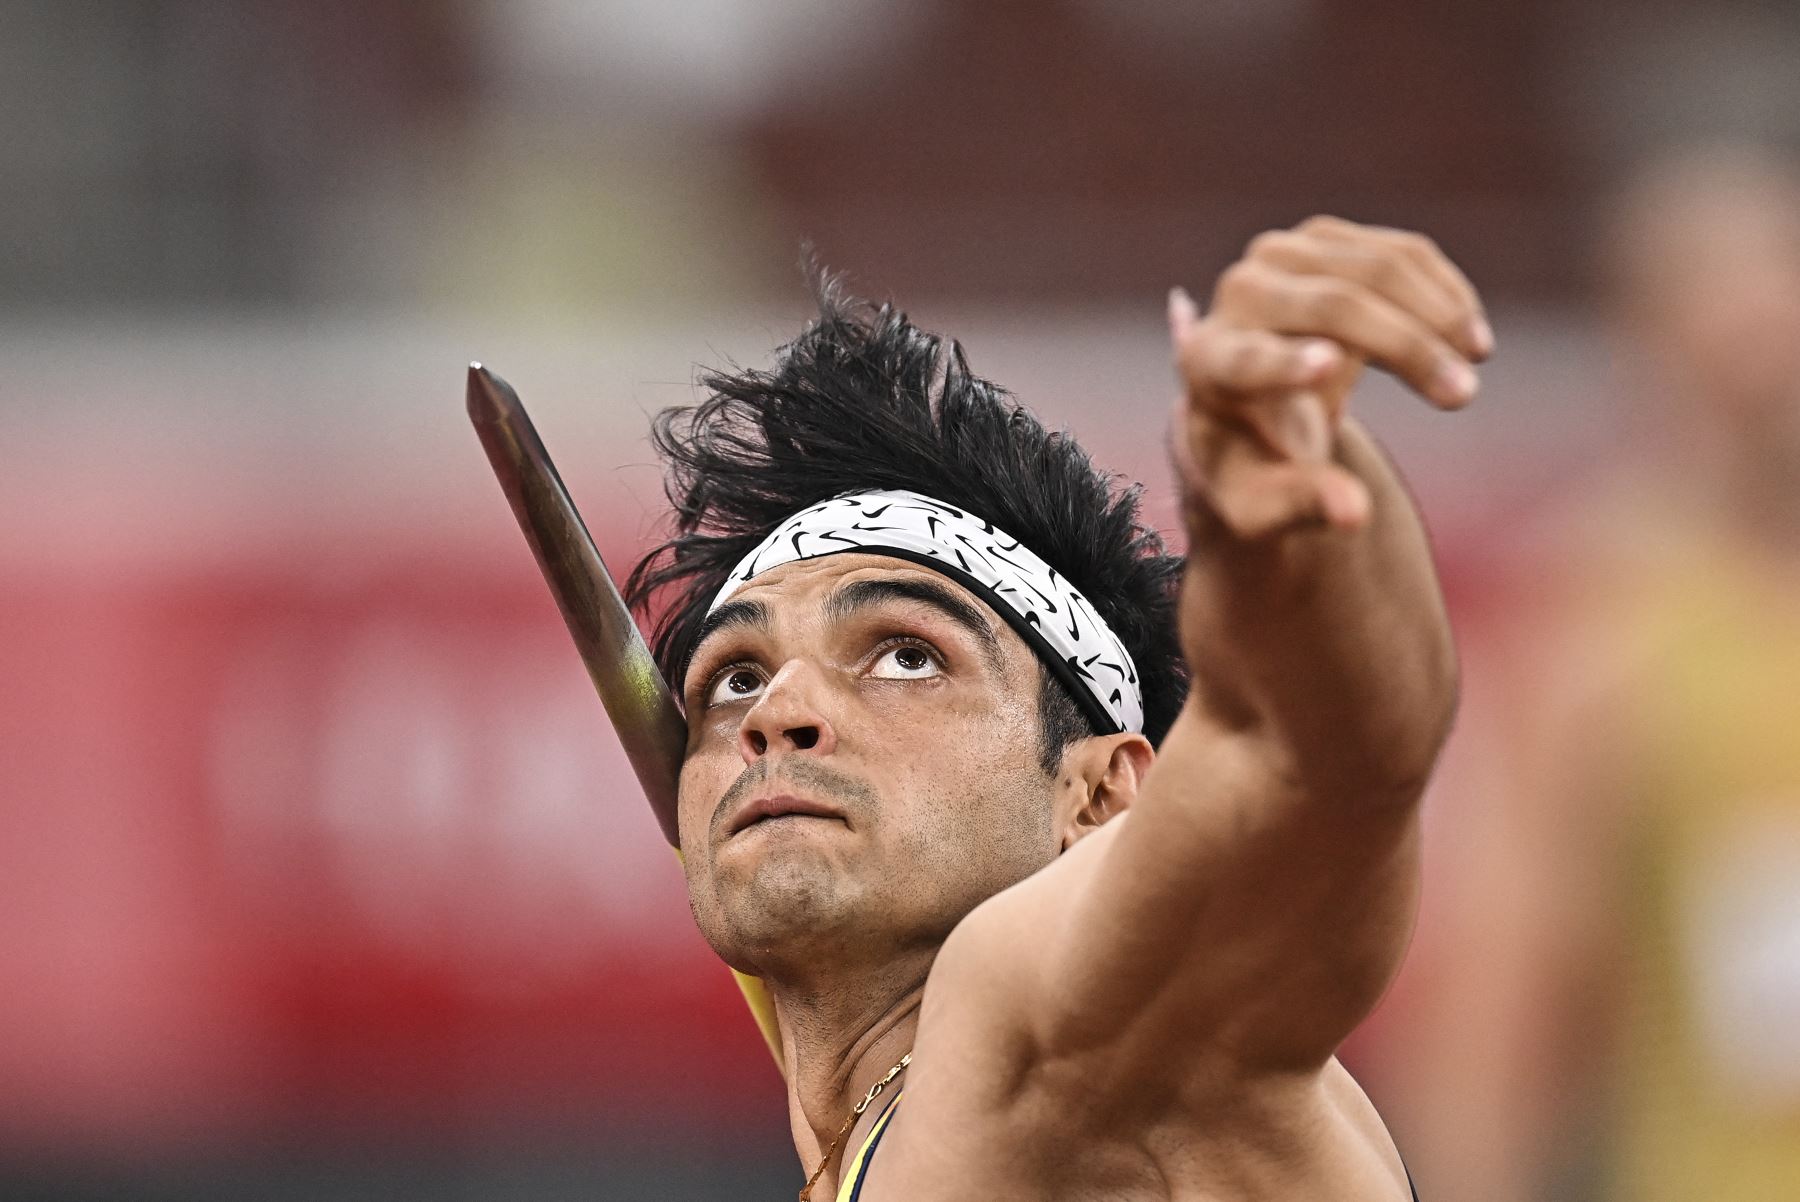 Neeraj Chopra de India compite en la final masculina de lanzamiento de jabalina durante los Juegos Olímpicos de Tokio 2020, en el Estadio Olímpico. Foto: AFP